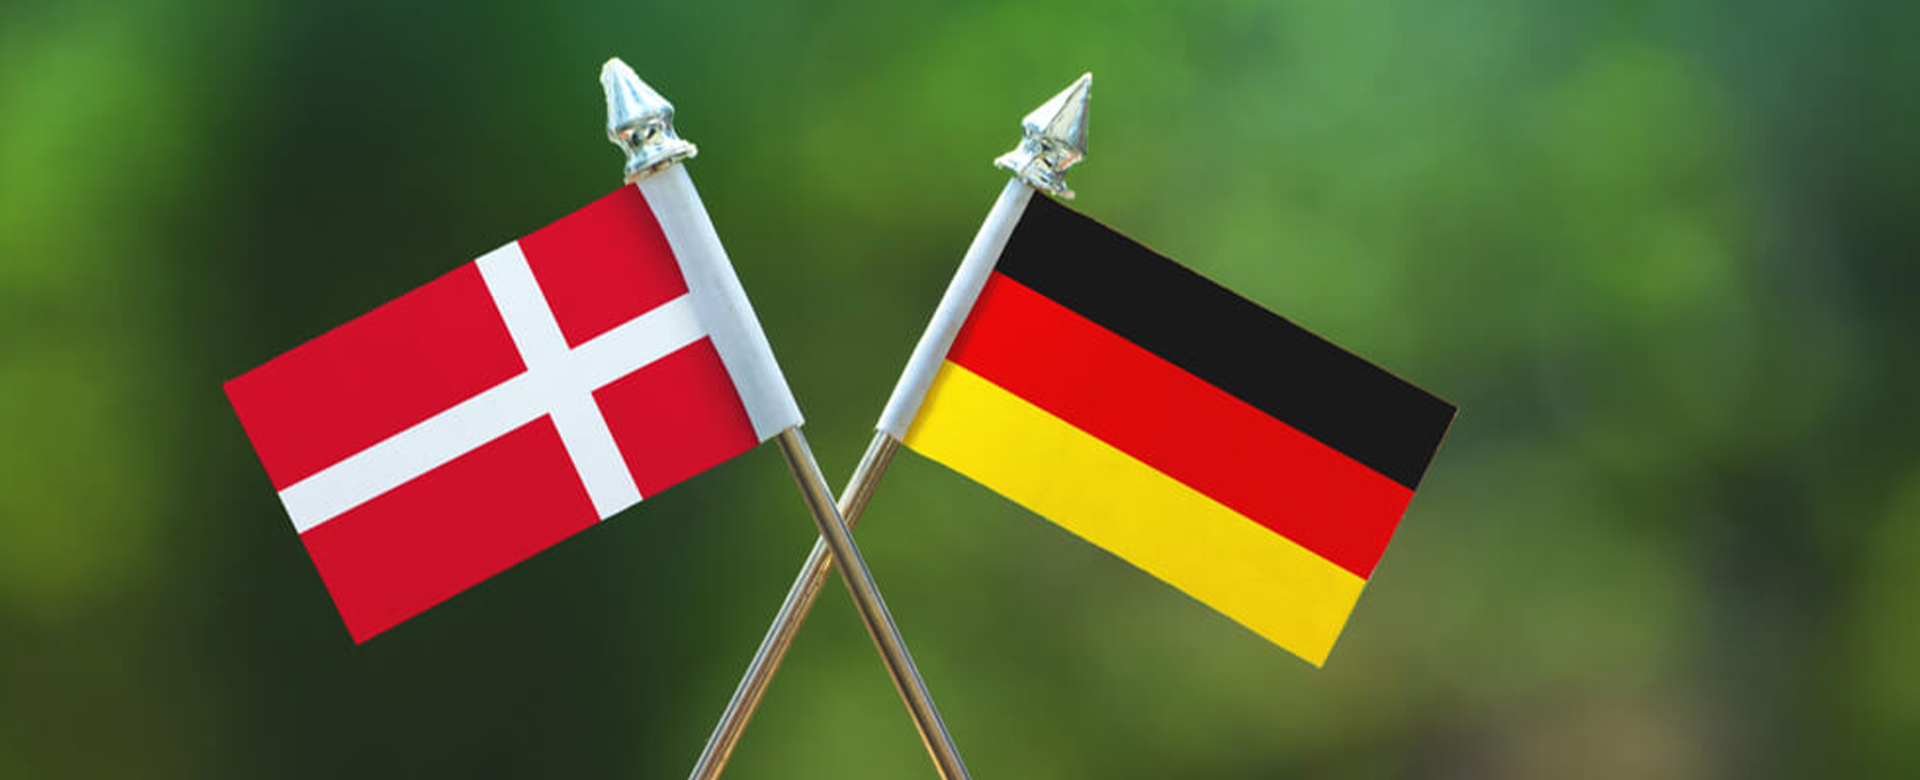 Dansk og tysk flag